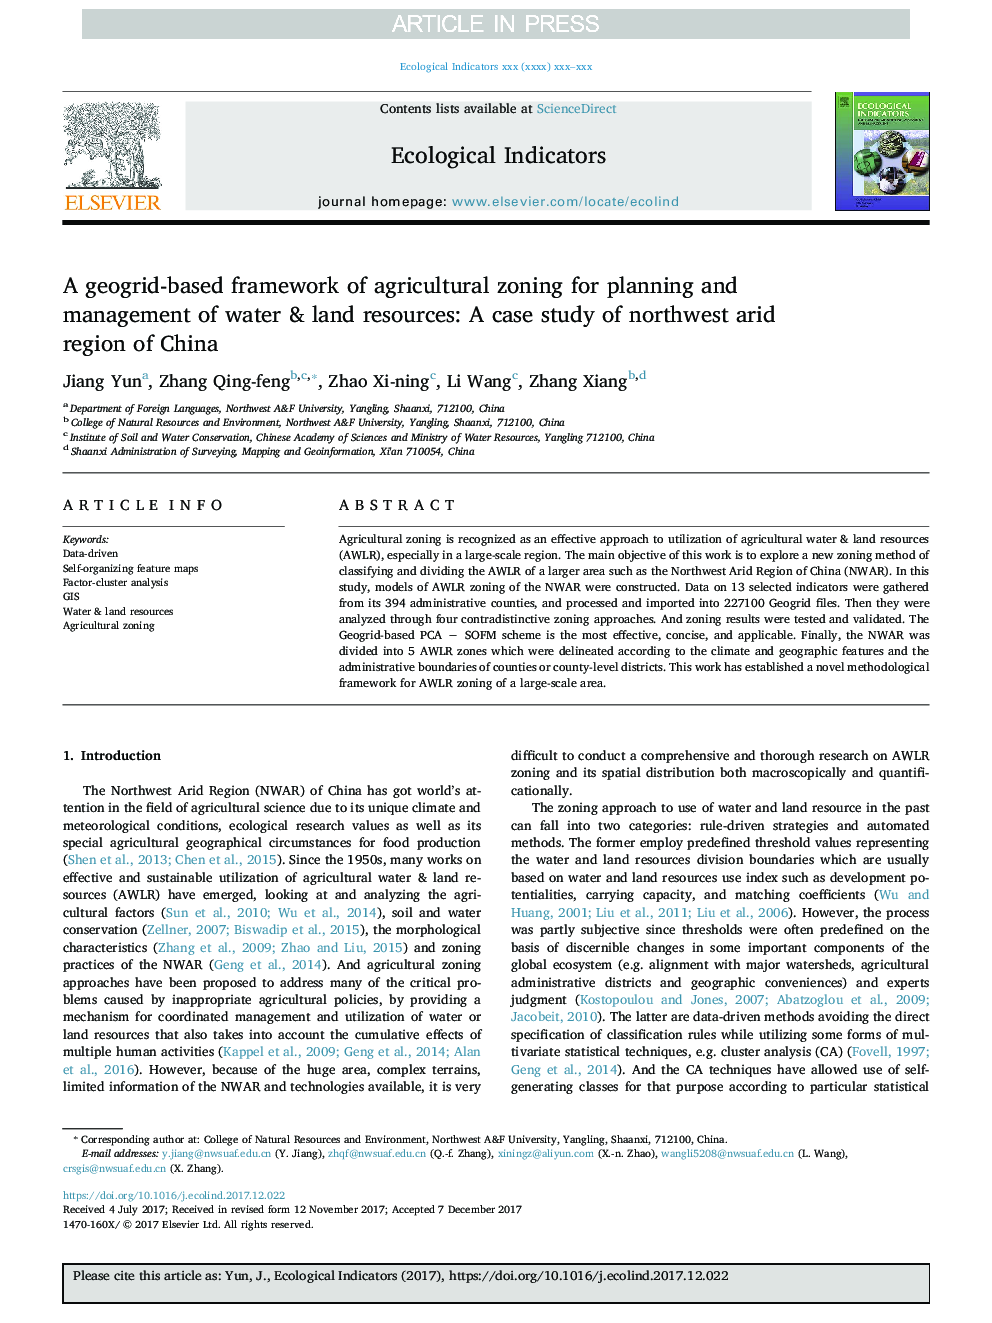 یک چارچوب مبتنی بر ژئواستره ای از منطقه بندی کشاورزی برای برنامه ریزی و مدیریت منابع آب و زمین: مطالعه موردی مناطق خلیج شمال غربی چین 